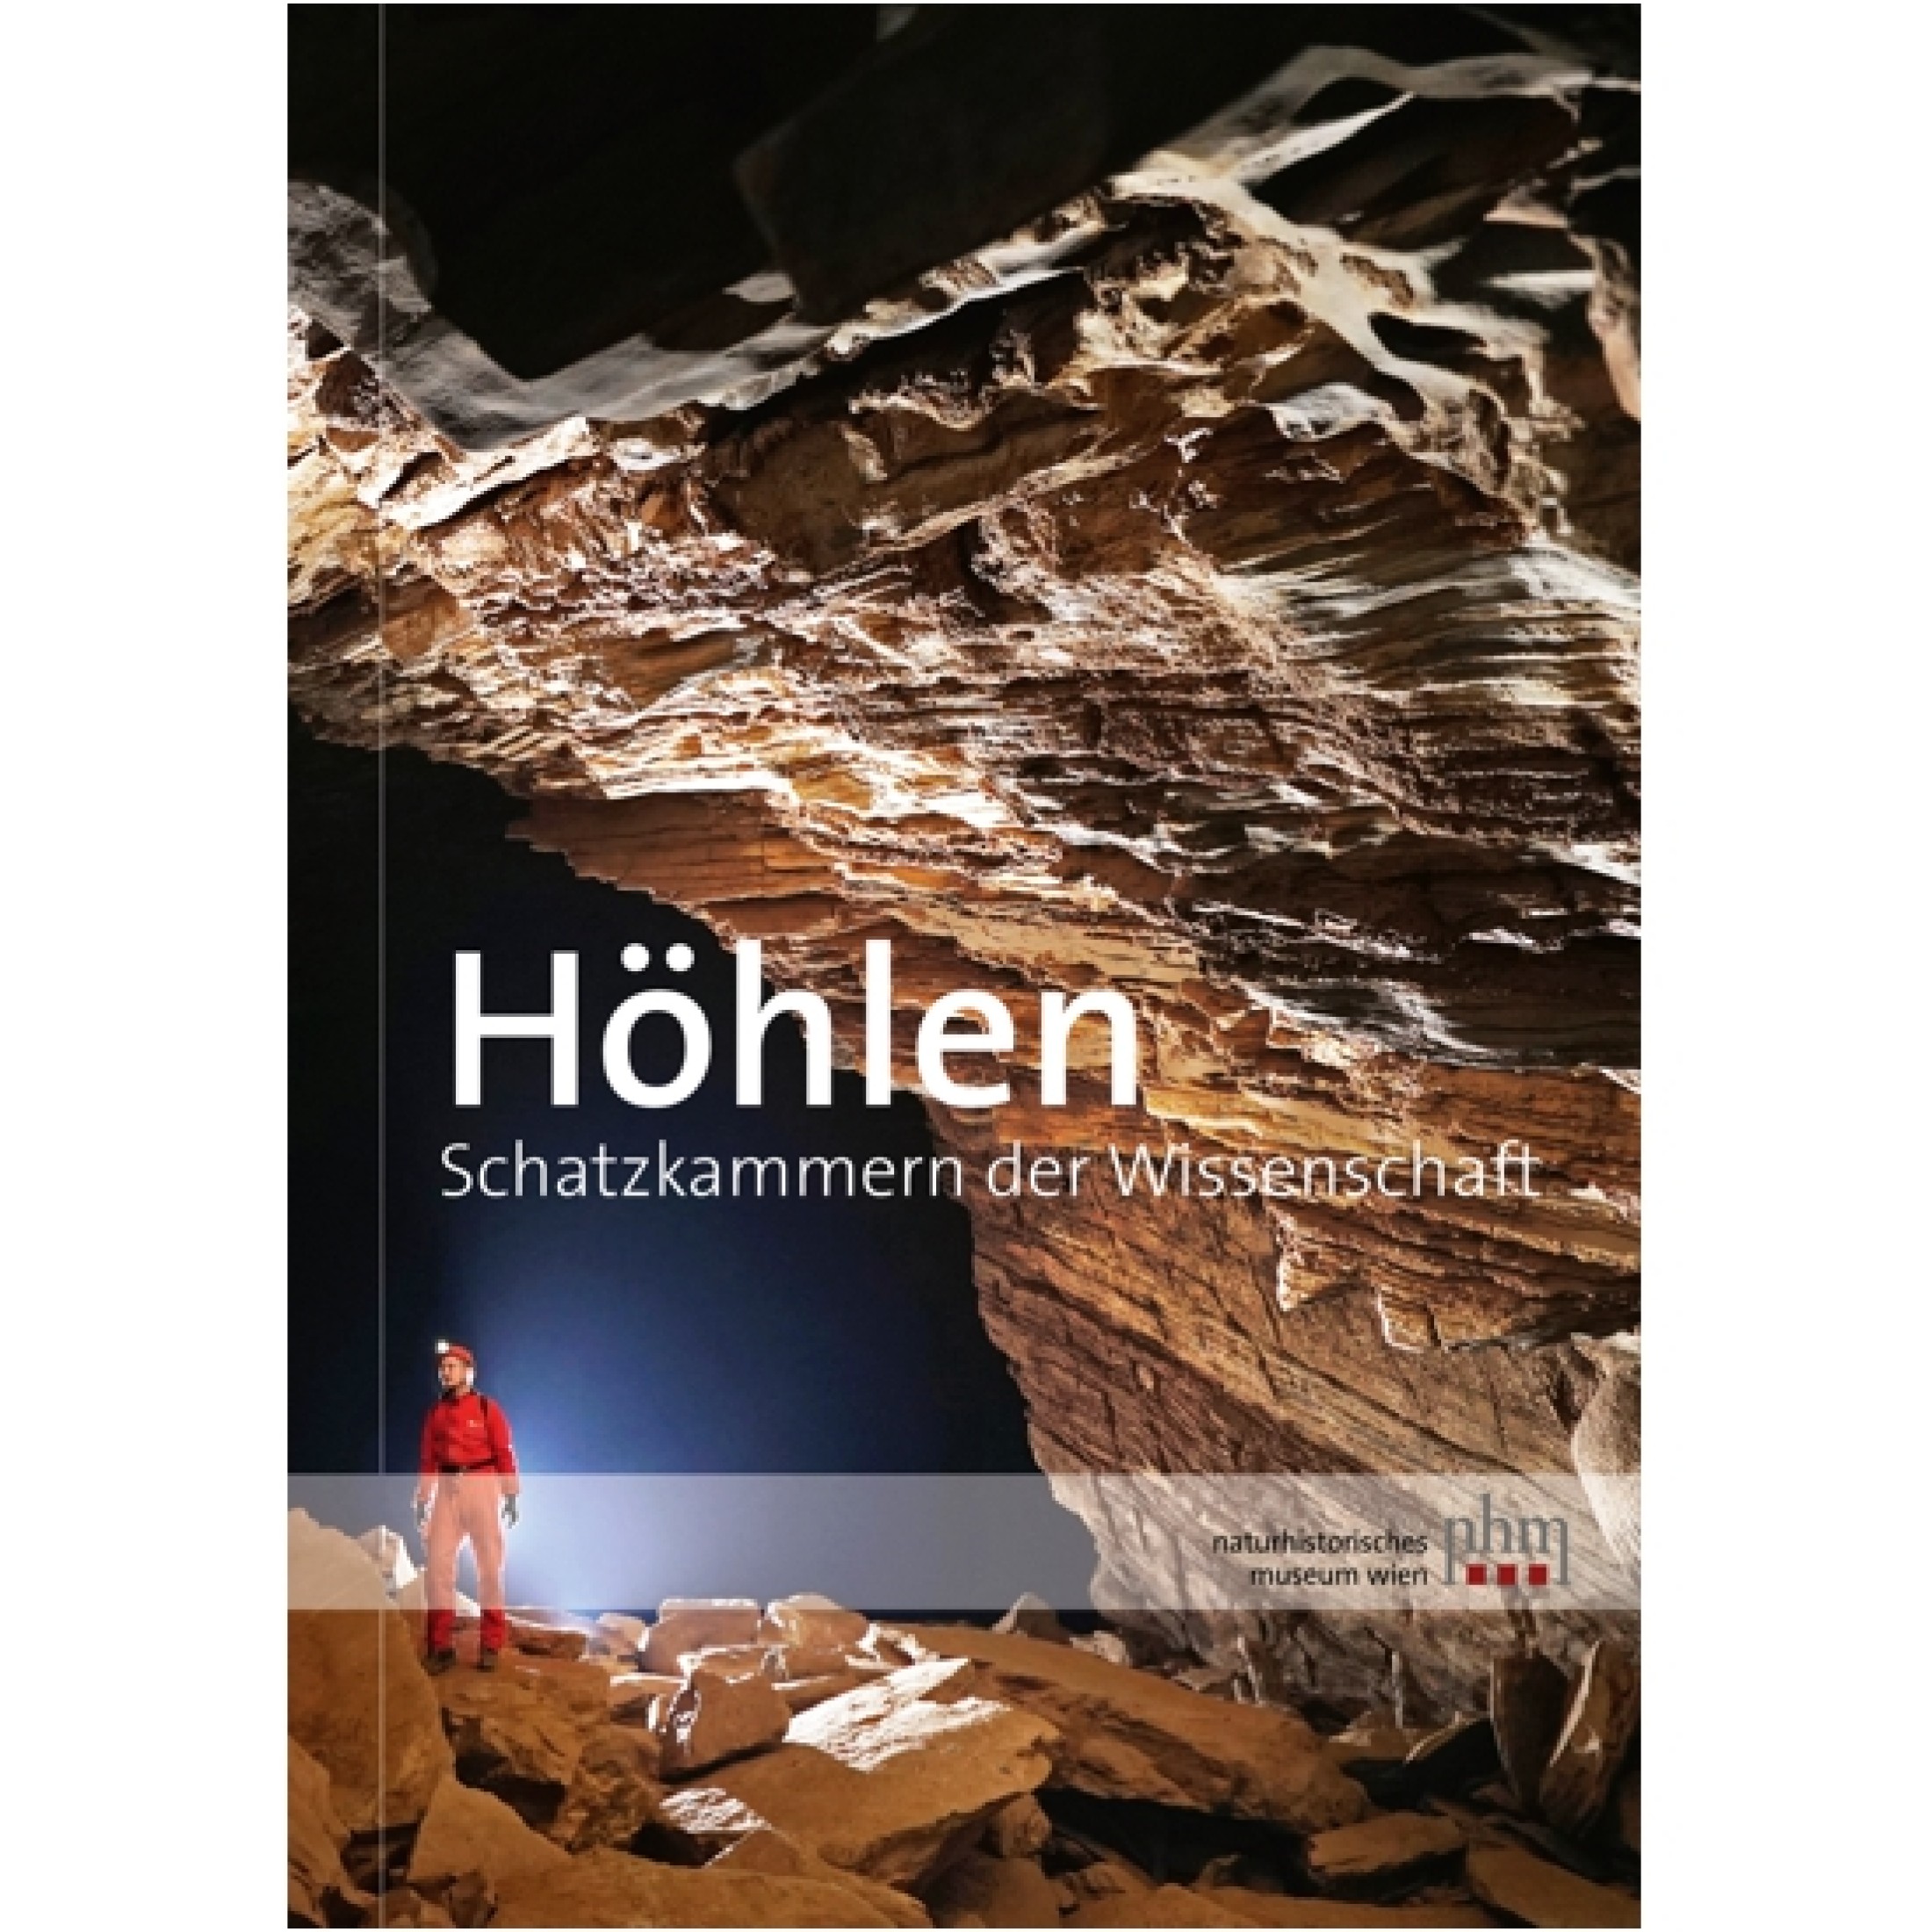 Plan, Lukas – Pauline Oberender – Andreas Kroh; Höhlen. Schatzkammern der Wissenschaft